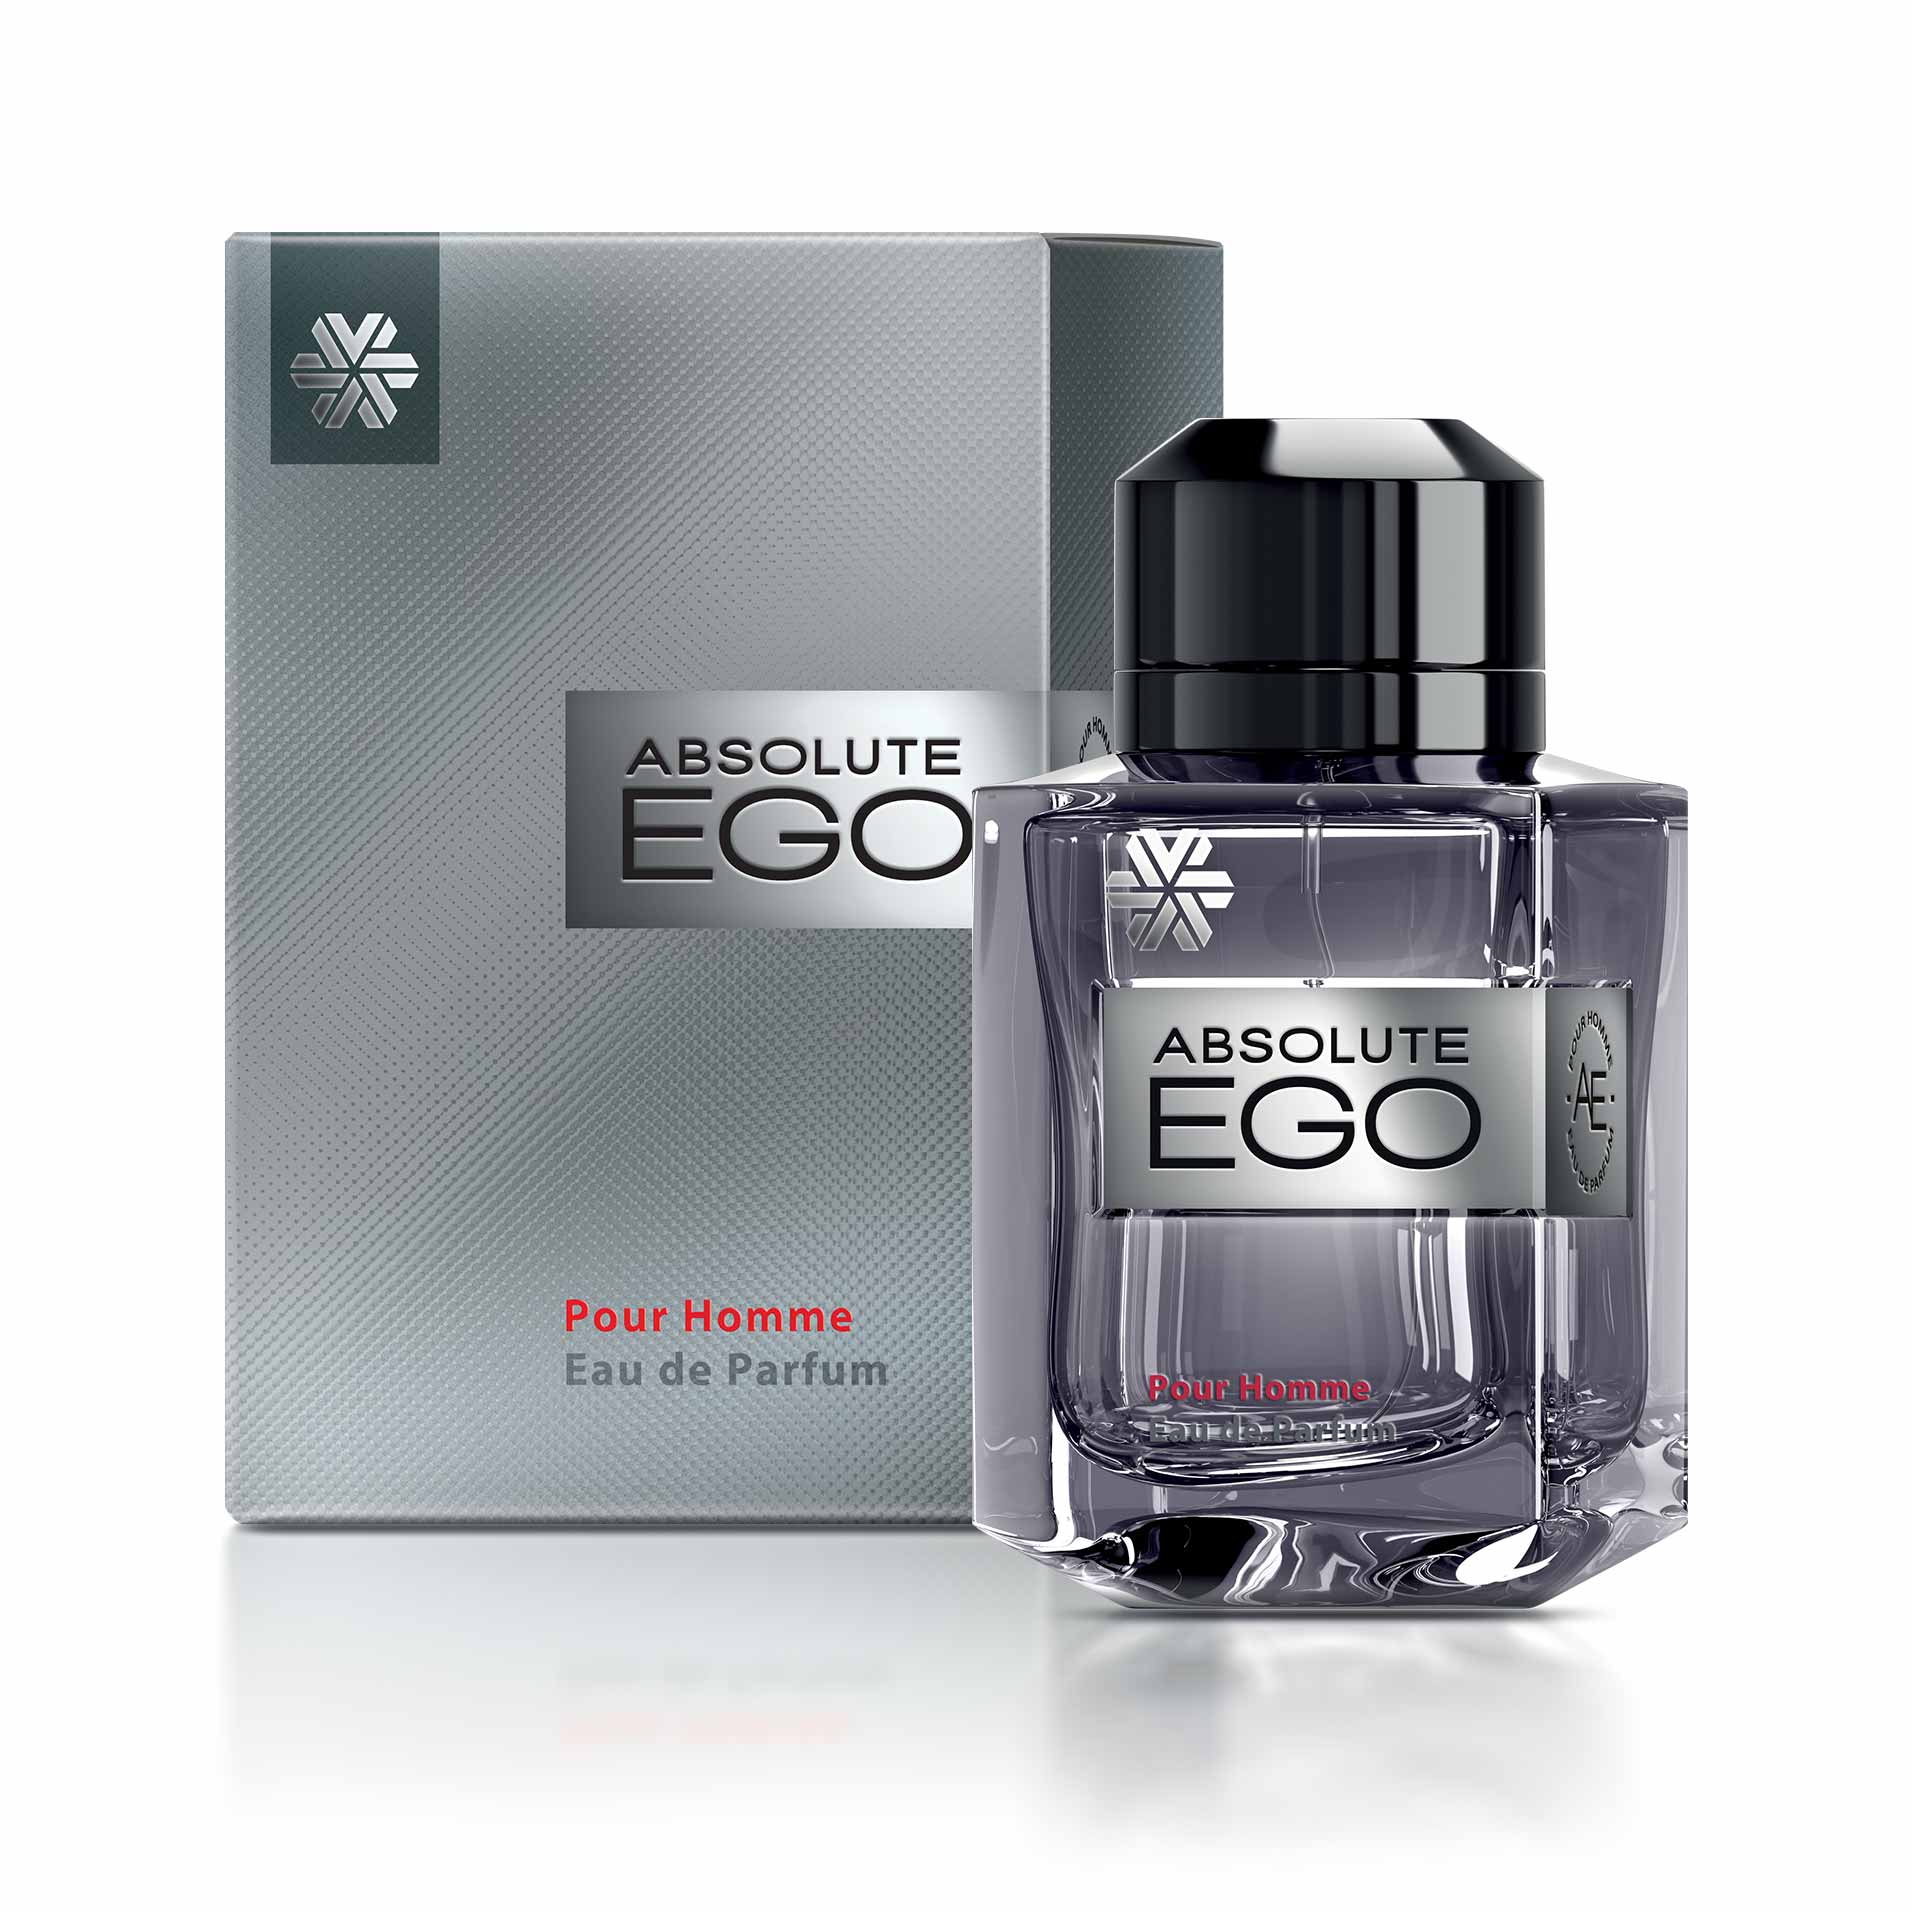 Изображение отсутствует.
			Купить Absolute Ego, парфюмерная вода для мужчин - Коллекция ароматов Ciel //  // 